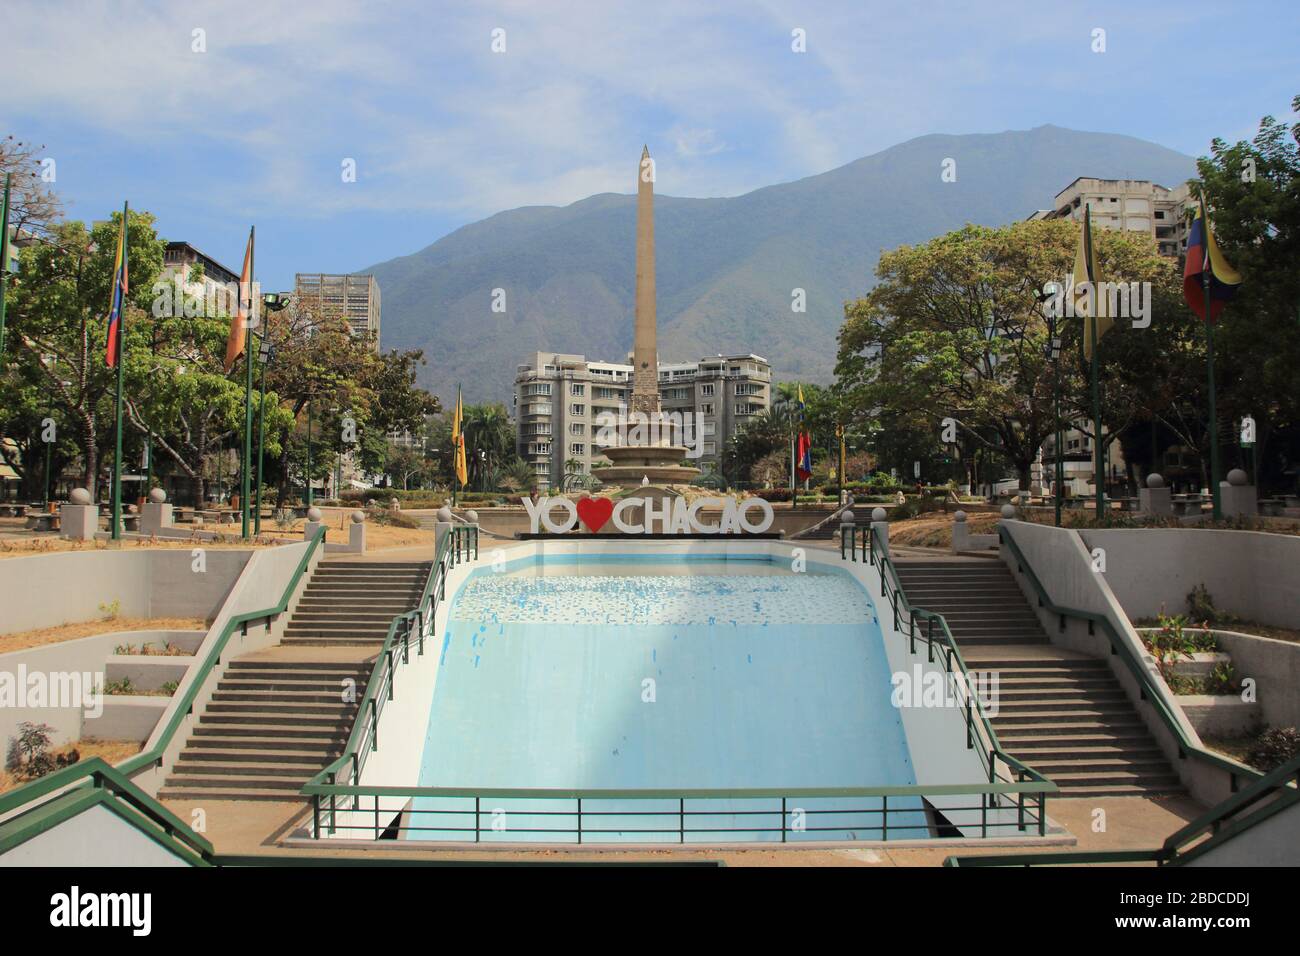 Caracas, Venezuela 31 de marzo de 2020: Plaza Francia (también conocida como Plaza Altamira), en Caracas, ciudad capital de Venezuela vacía después de la cuarentena Foto de stock